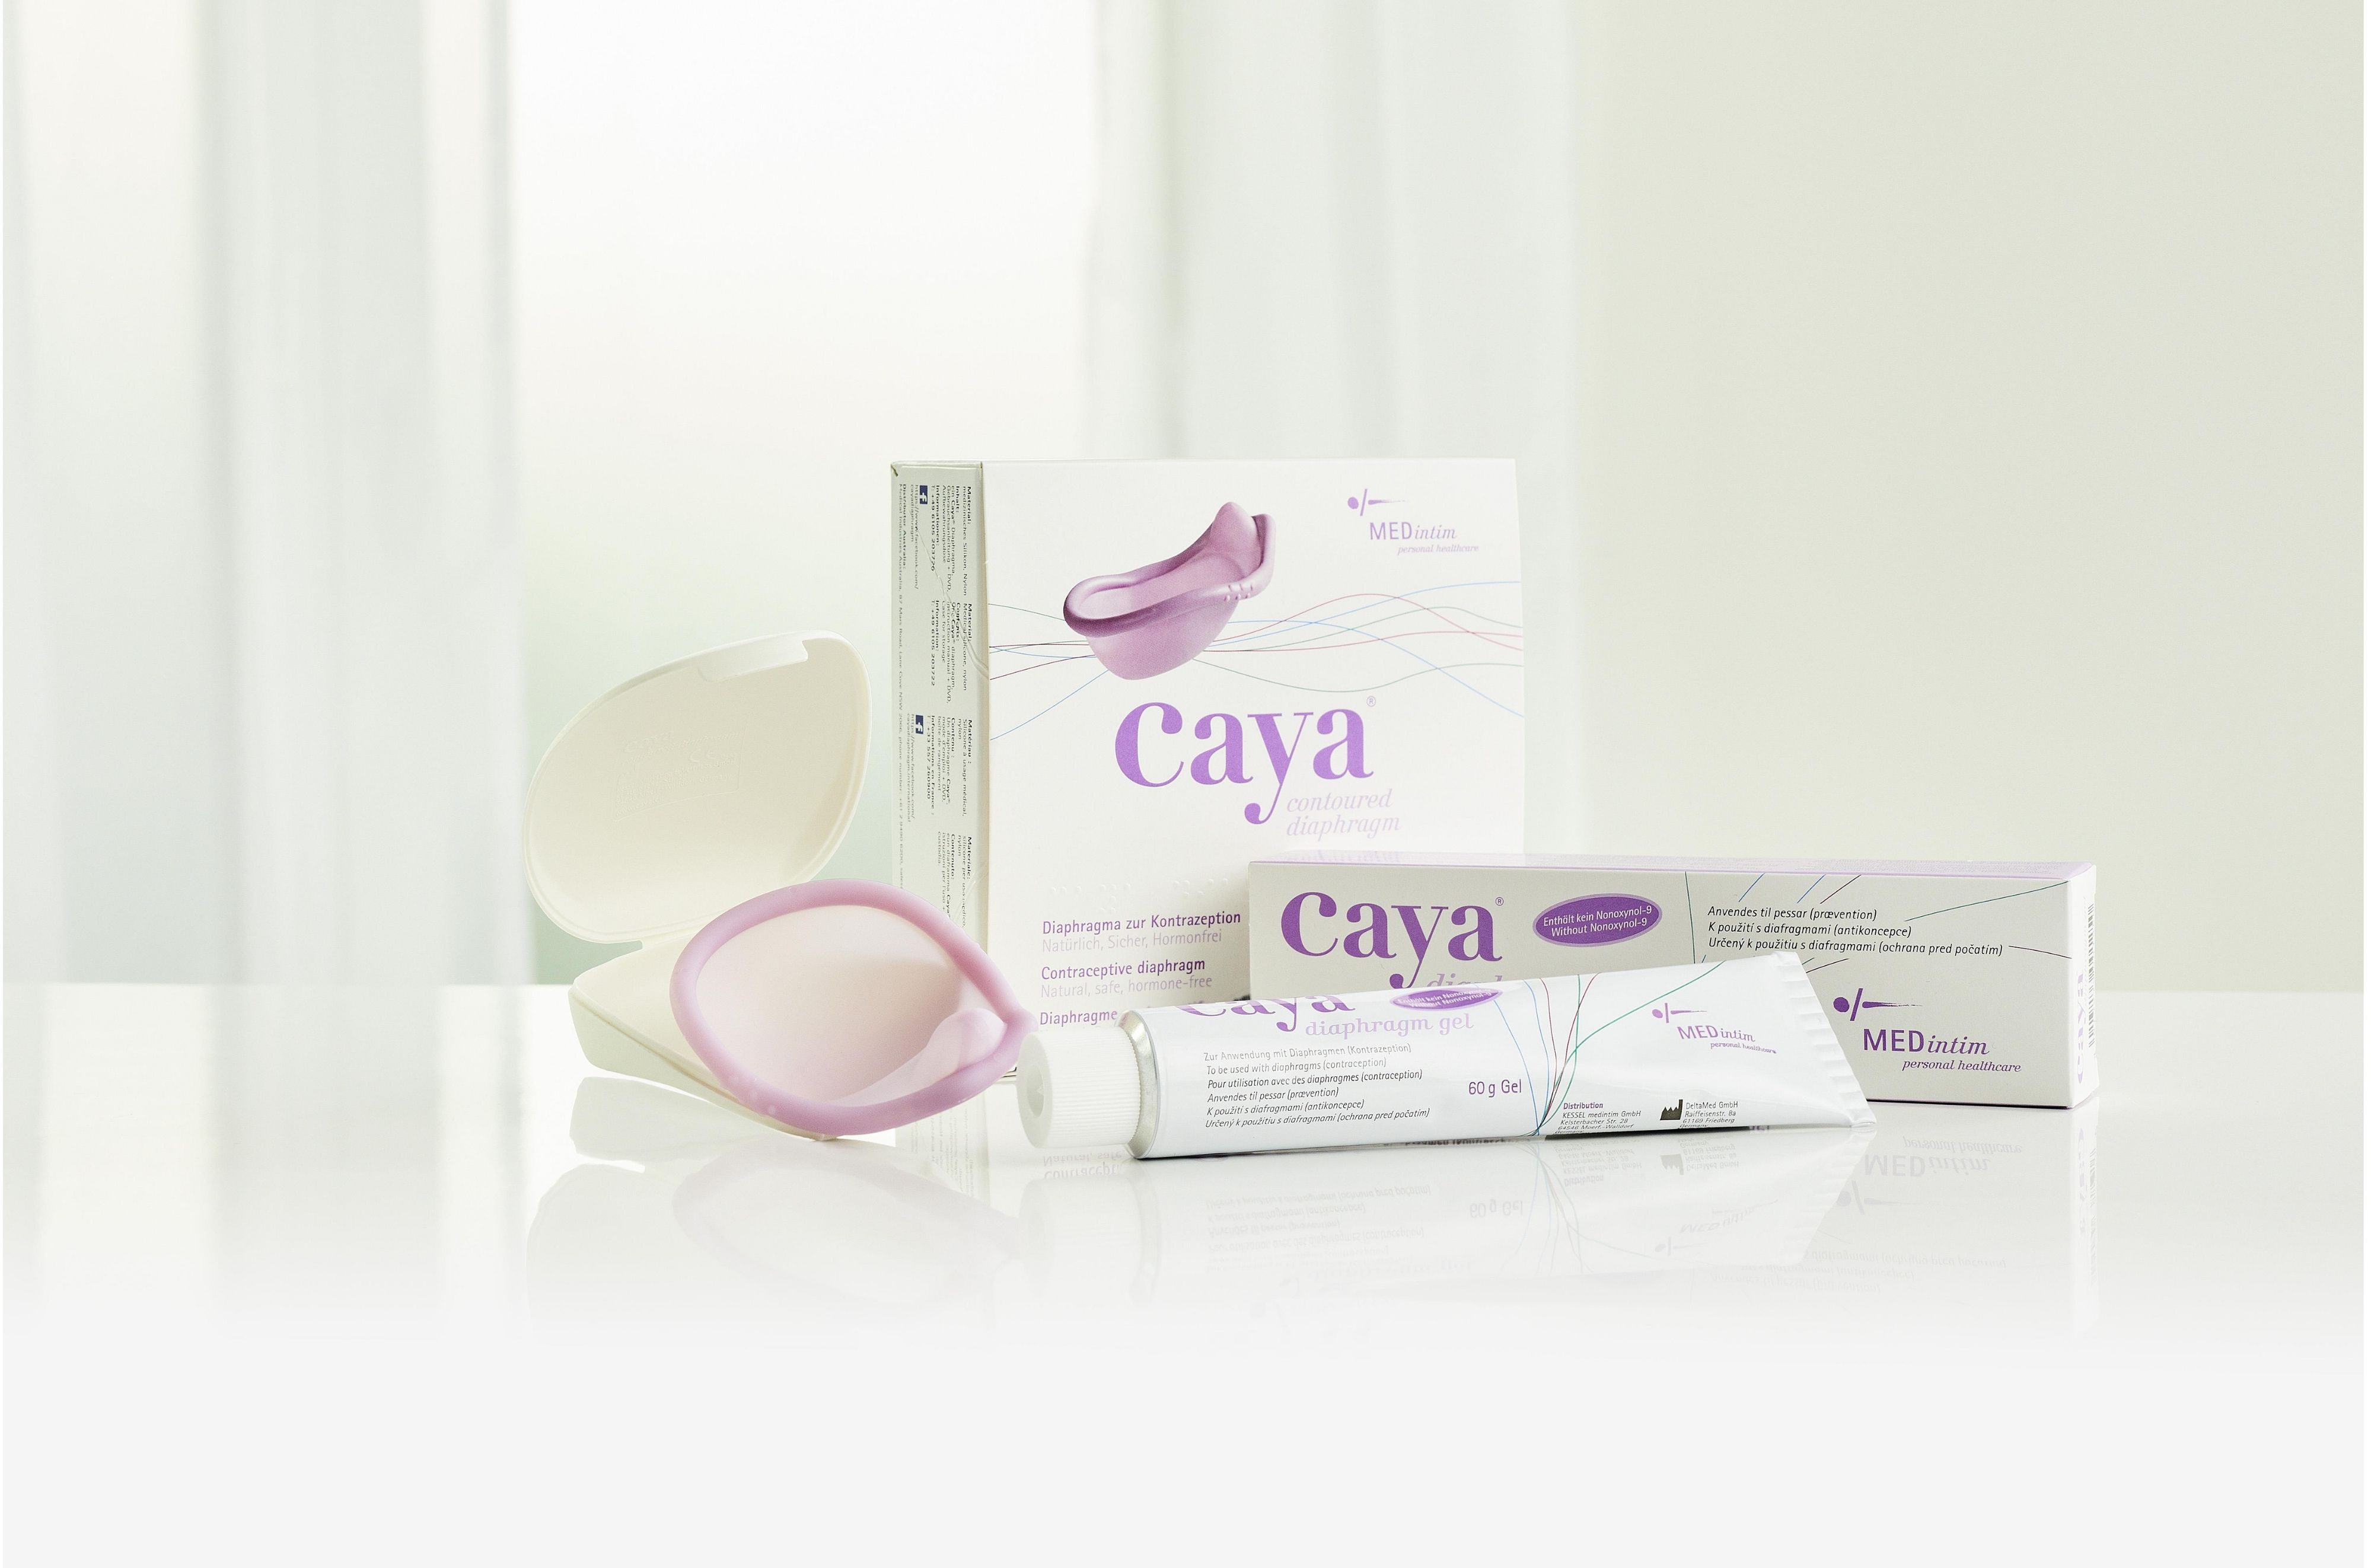 , Historia rozwoju Caya®, Diafragma Caya® - Antykoncepcja Bez Hormonów dla 98% Kobiet